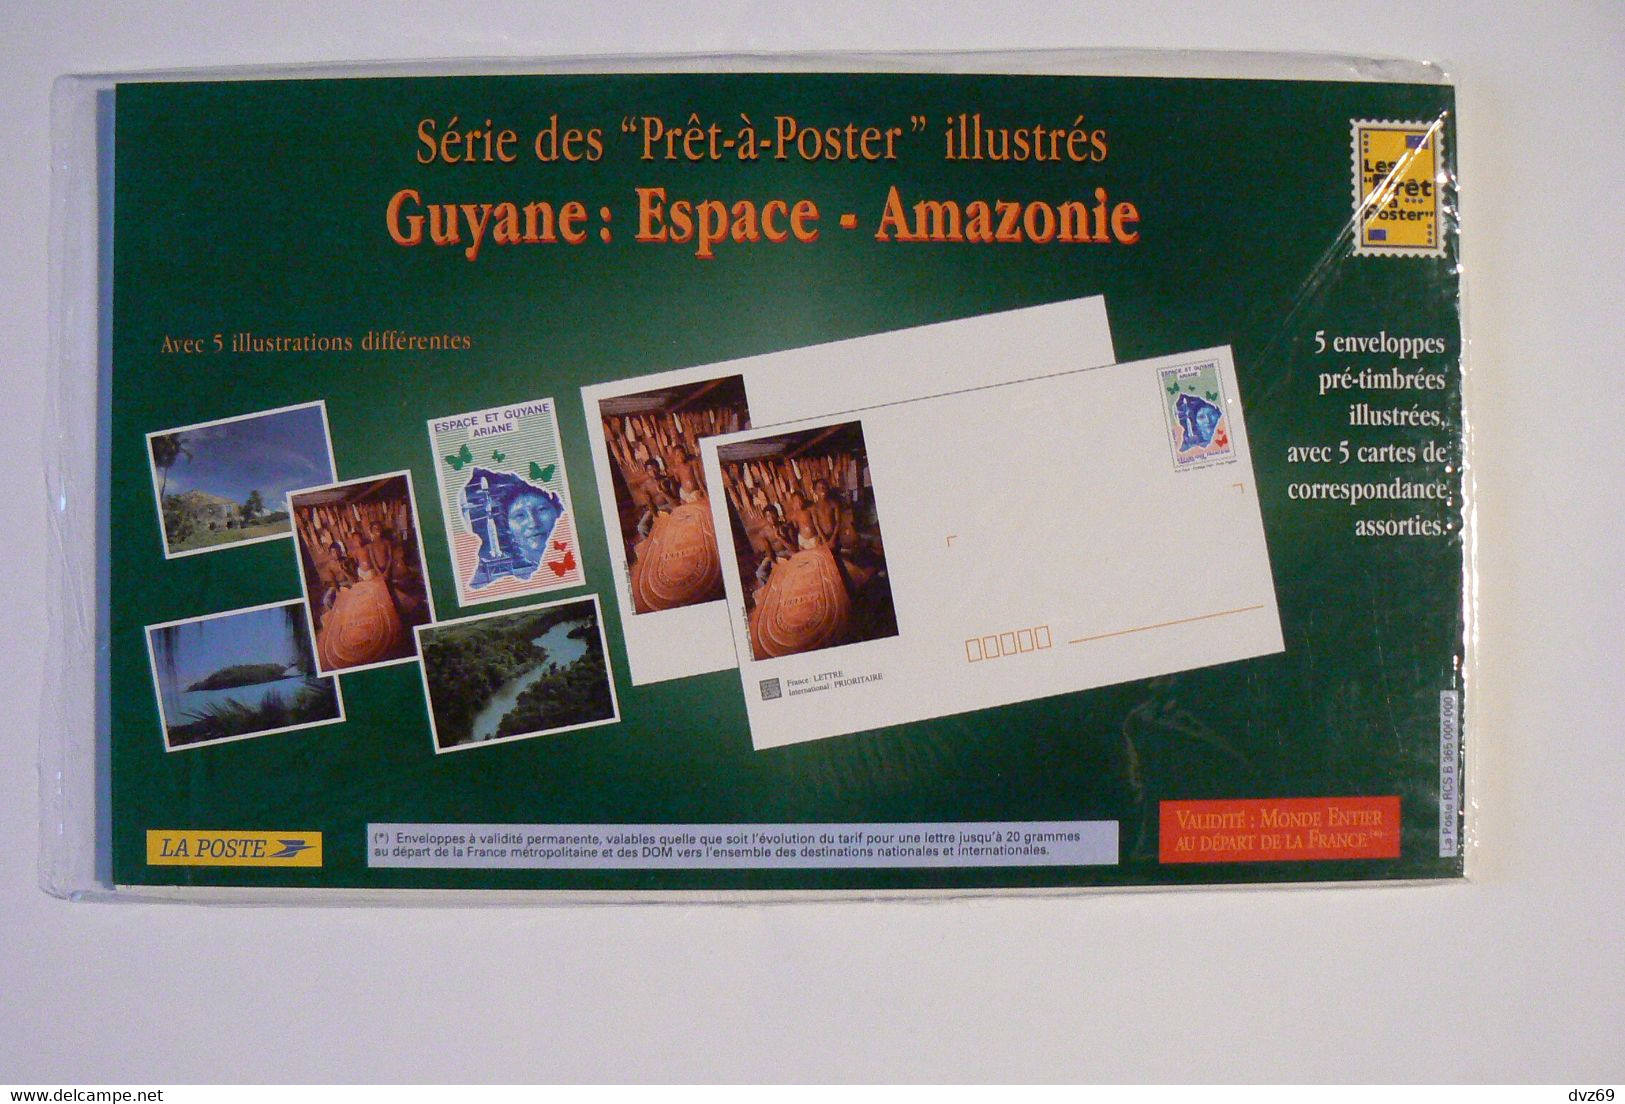 Guyane Espace Amazonie, 5 Enveloppes Pré-timbrées Illustrées + Cartes Assorties, Encore Sous Blister Ouvert, TB. - Lots Et Collections : Entiers Et PAP